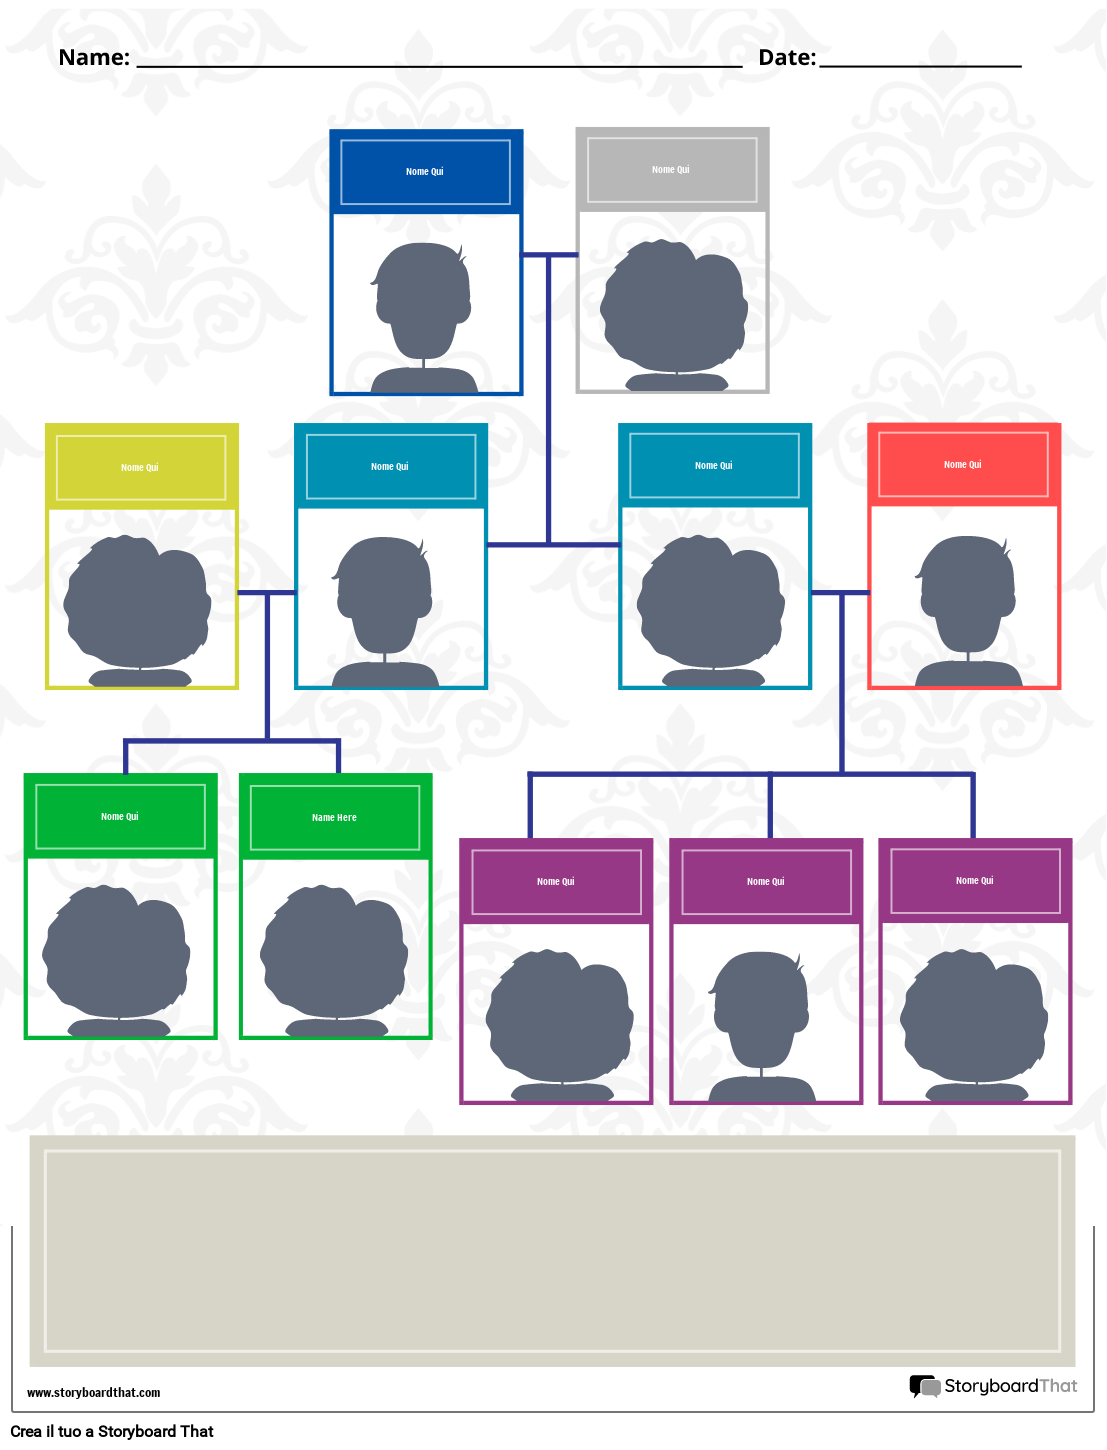 Nuovo modello di albero genealogico ED 3 (bianco e nero)